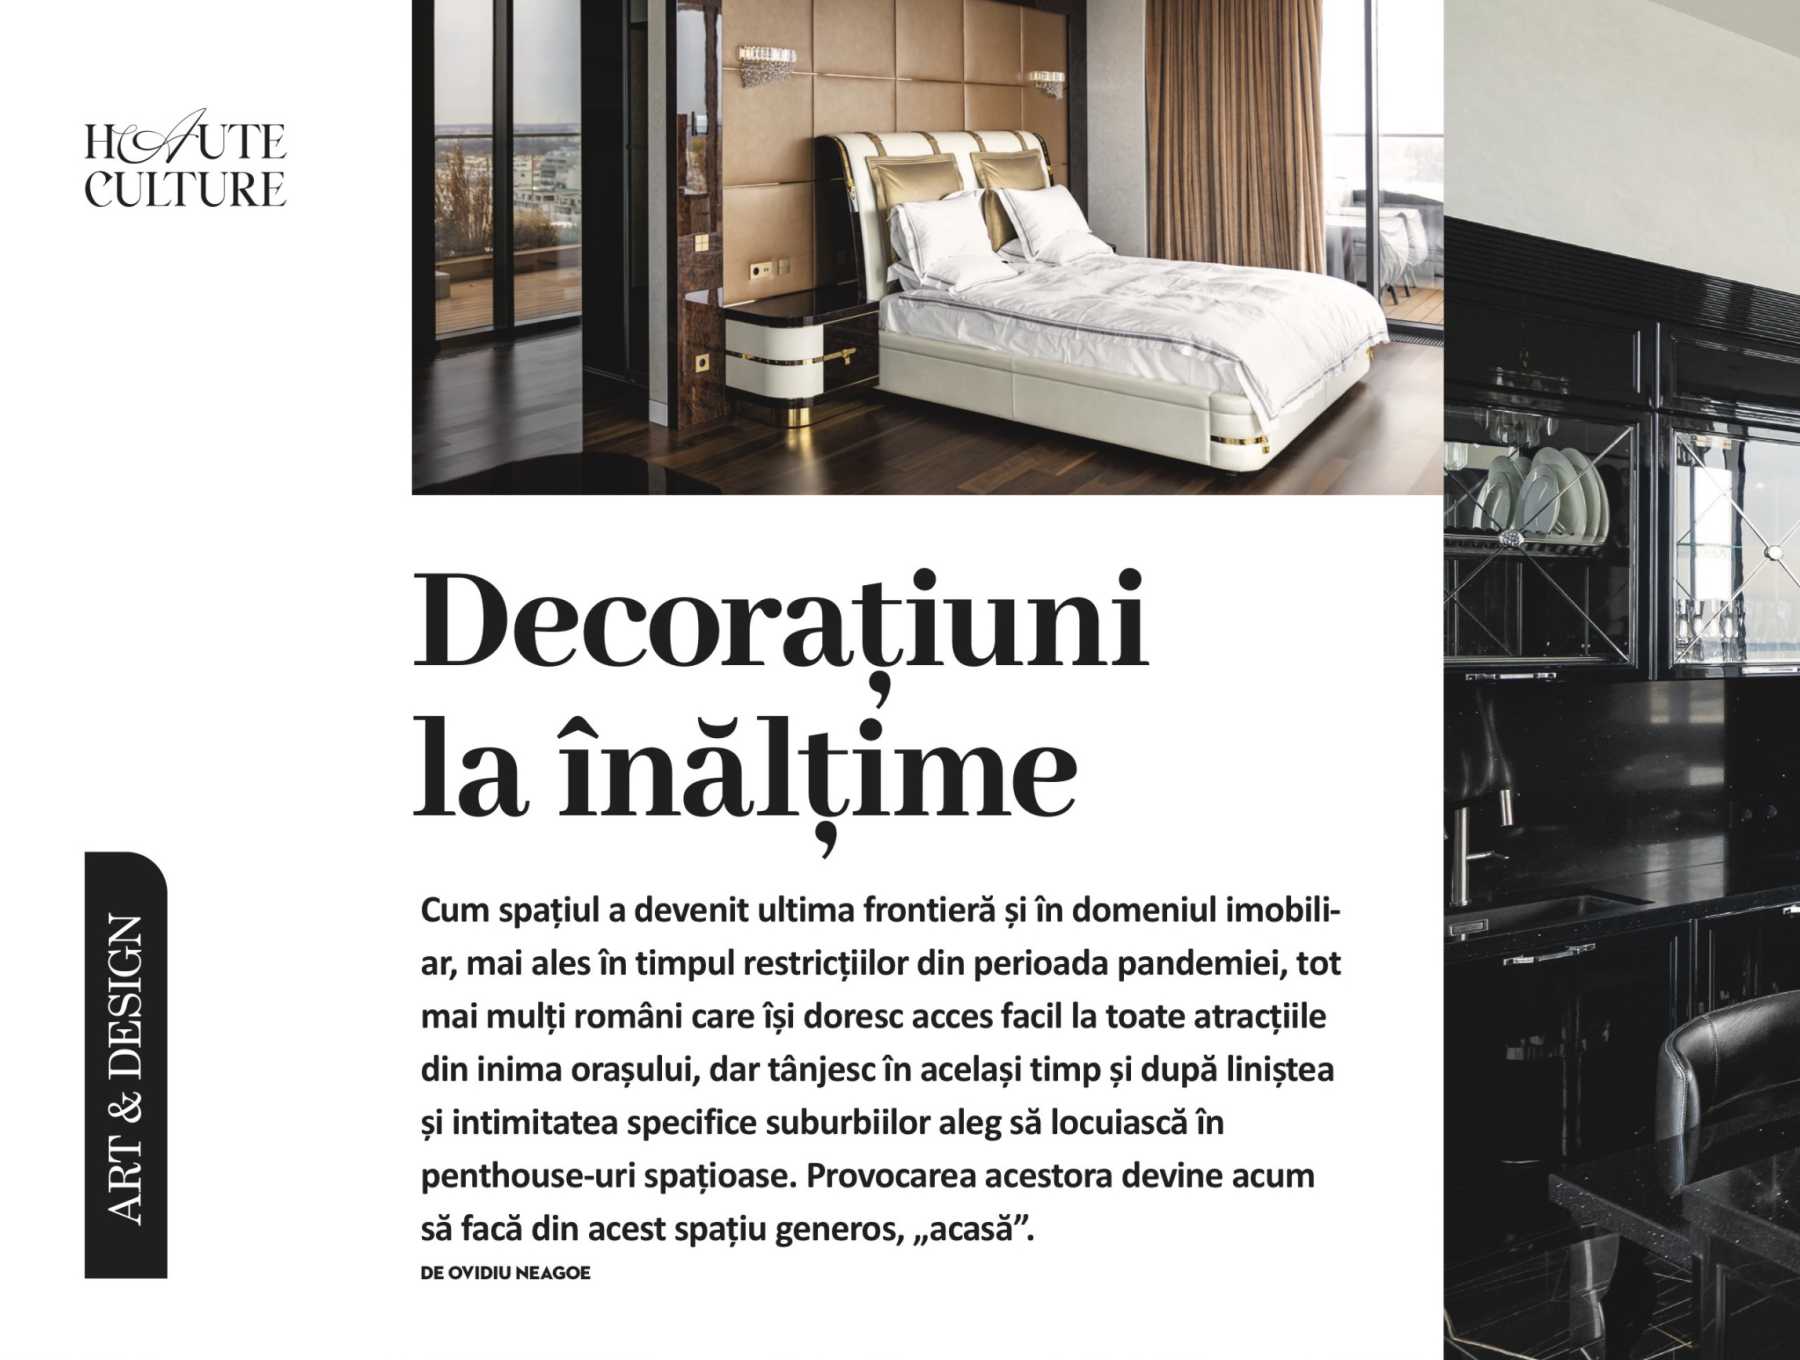 Lemon Interior – design la înălțime în numărul de debut al revistei Haute Culture